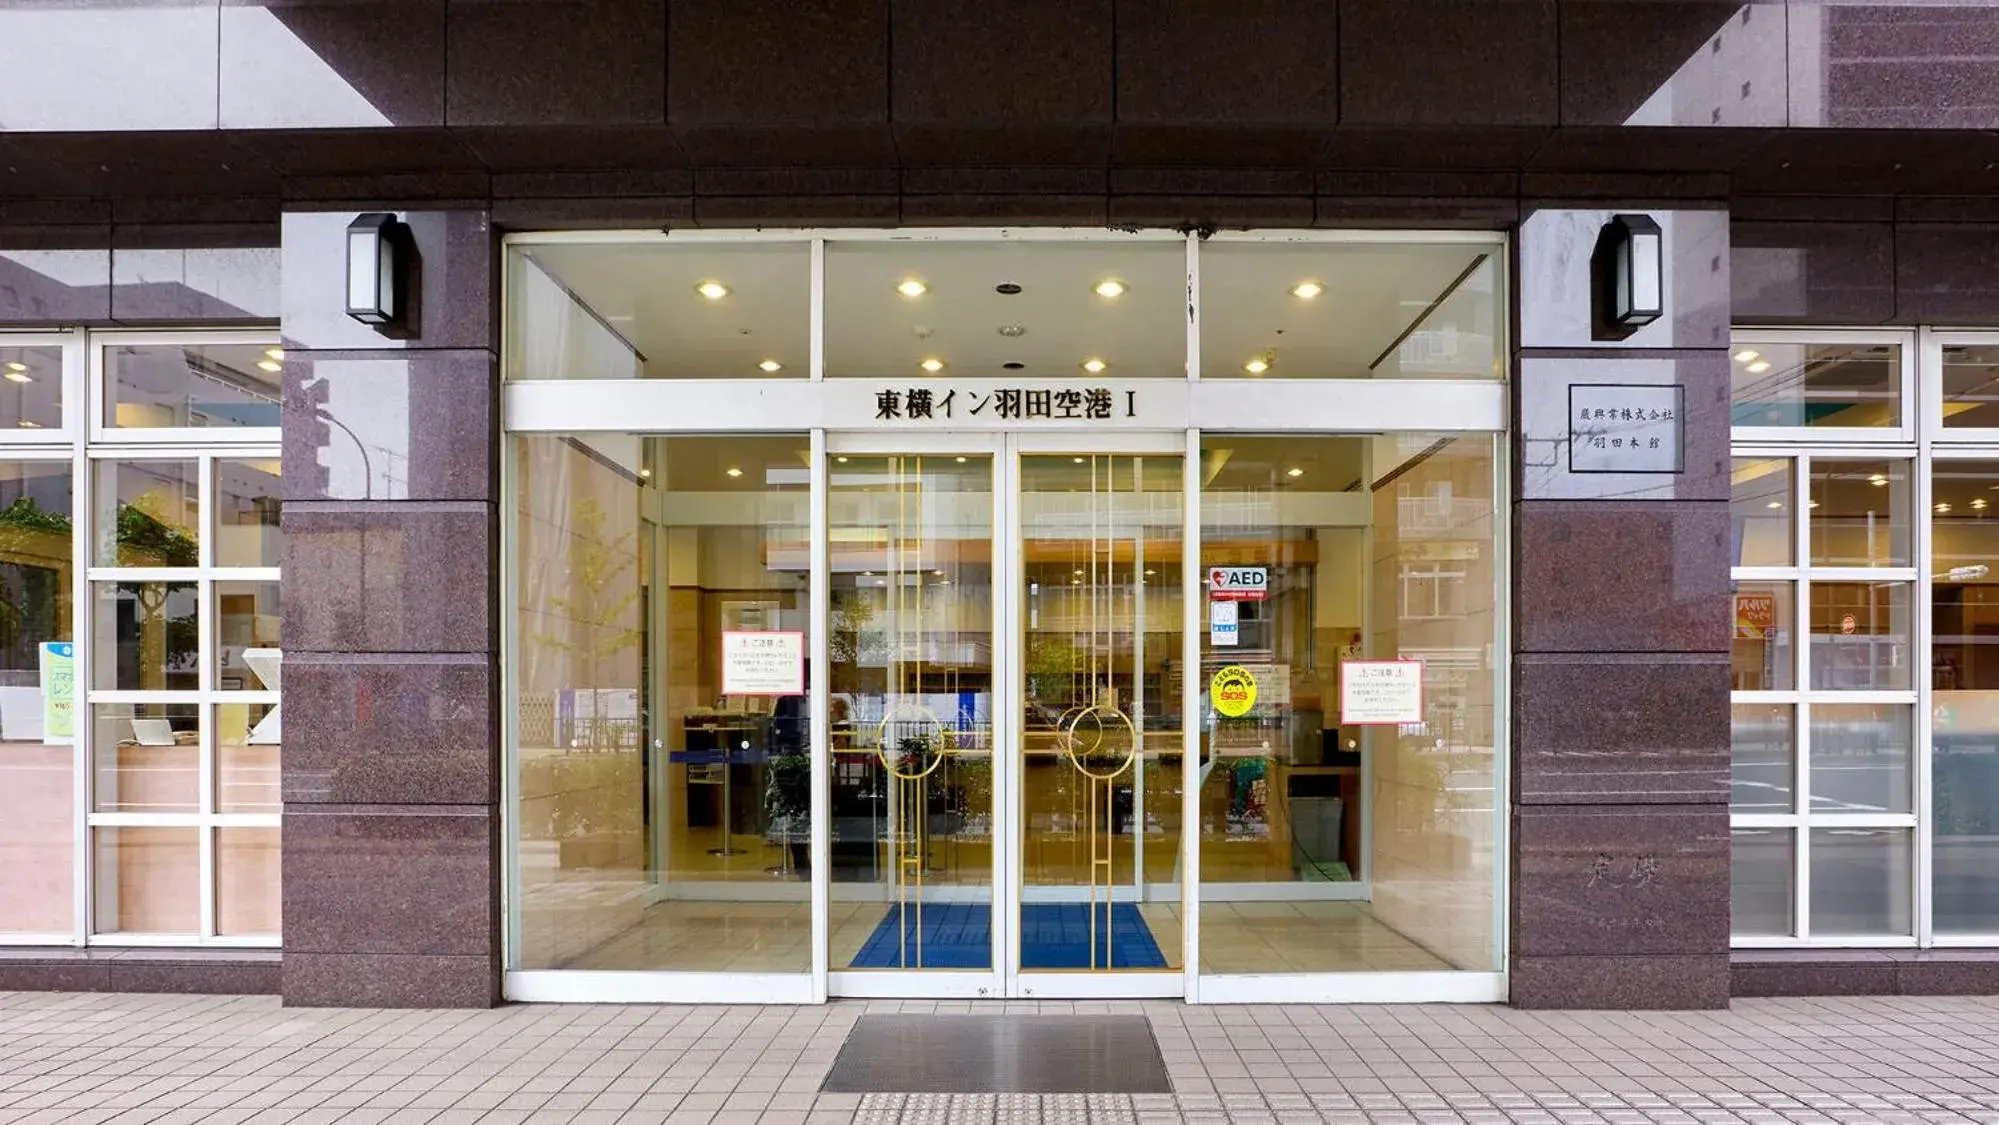 Facade/entrance in Toyoko Inn Tokyo Haneda Airport No.1